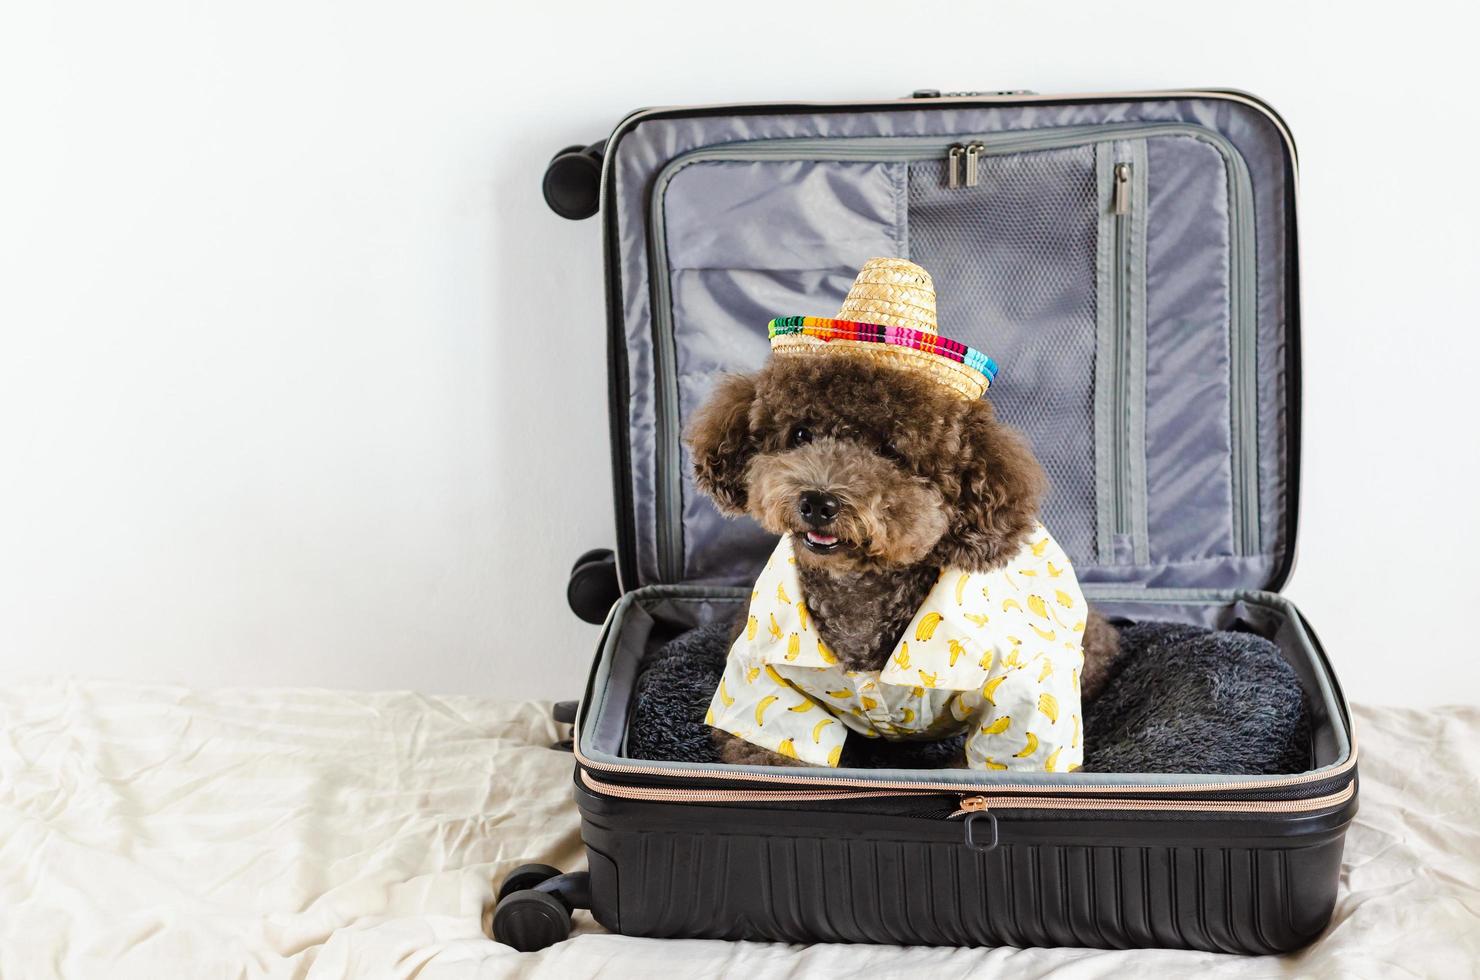 un adorable perro caniche negro con sombrero y vestido para el verano cuando va de viaje foto